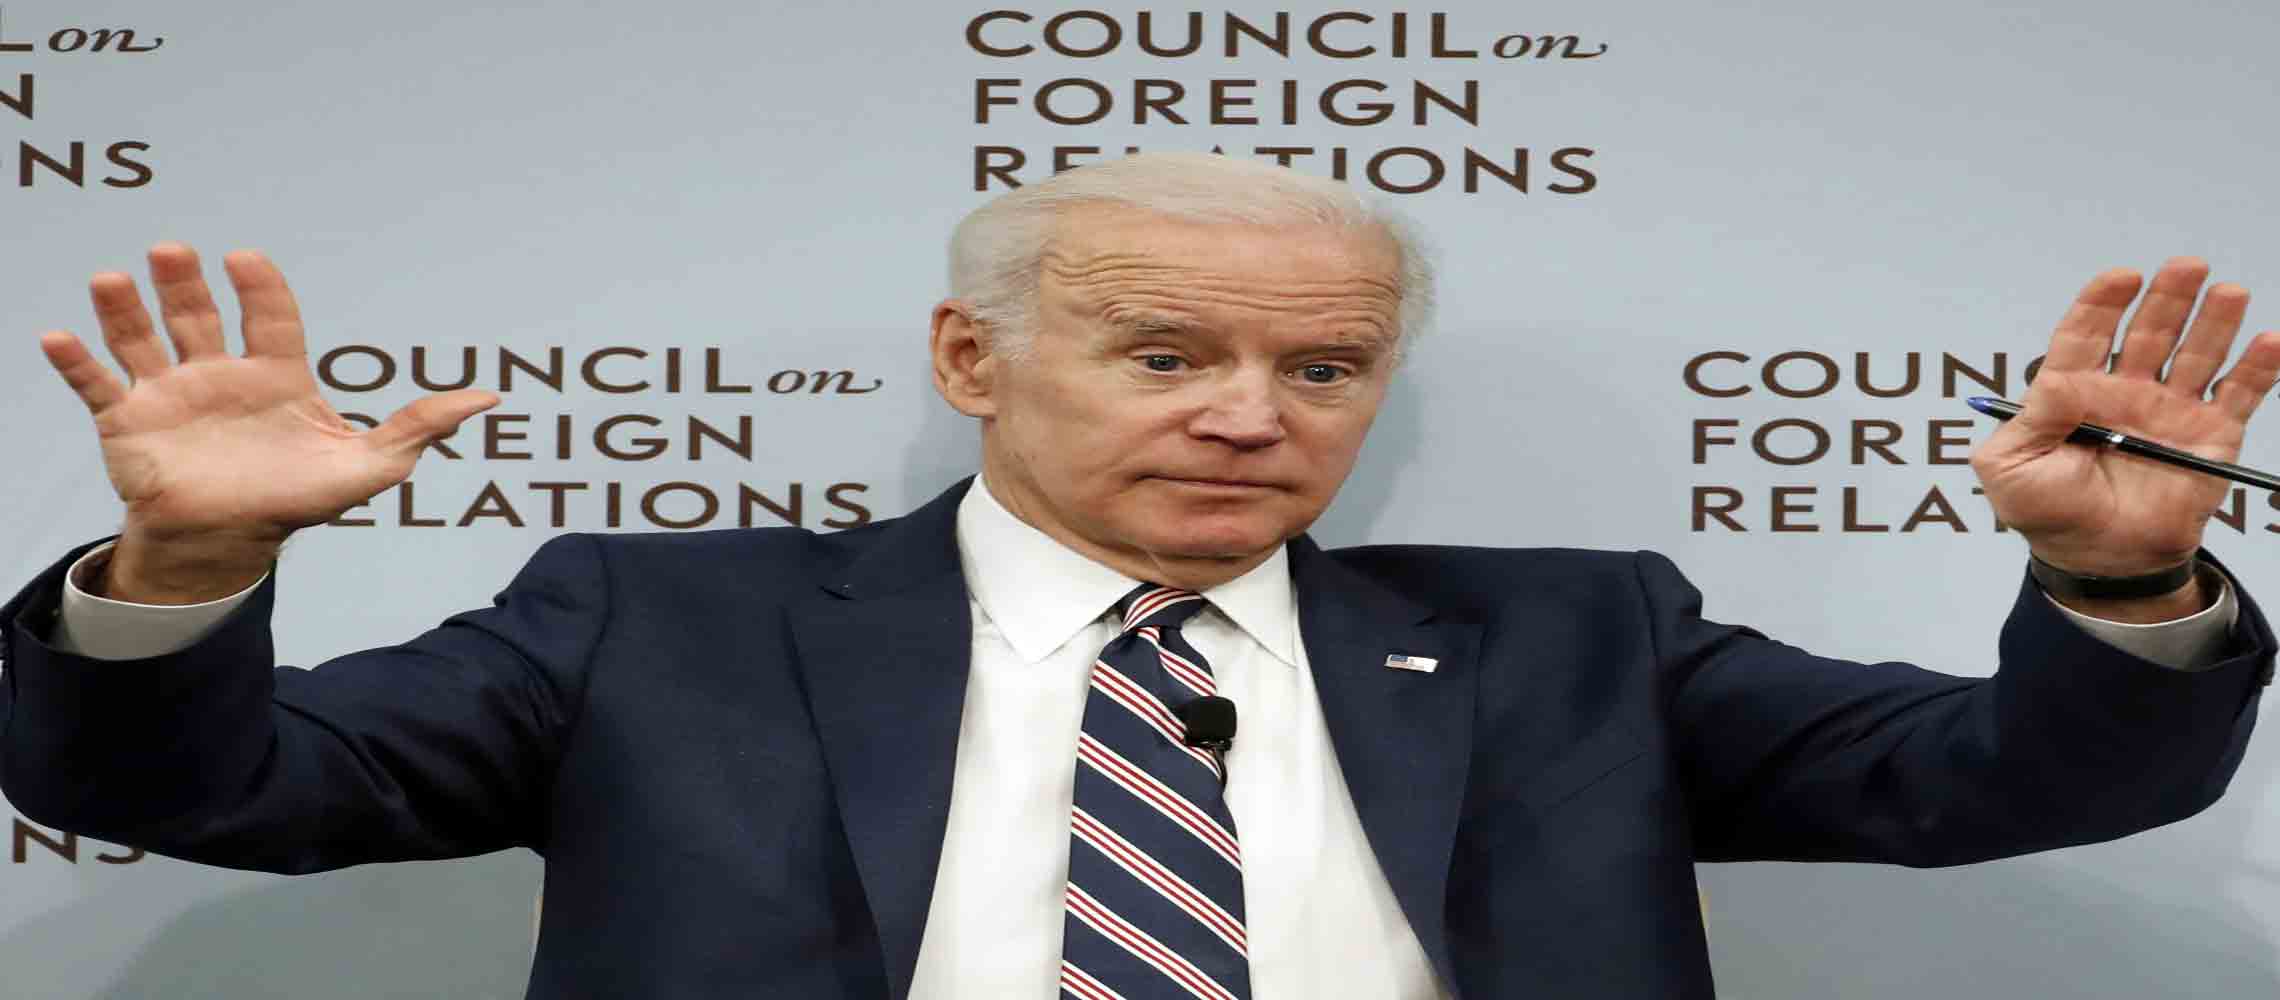 Joe_Biden_Council_on_Foreign_Relations_Viktor_Shokin_Fired